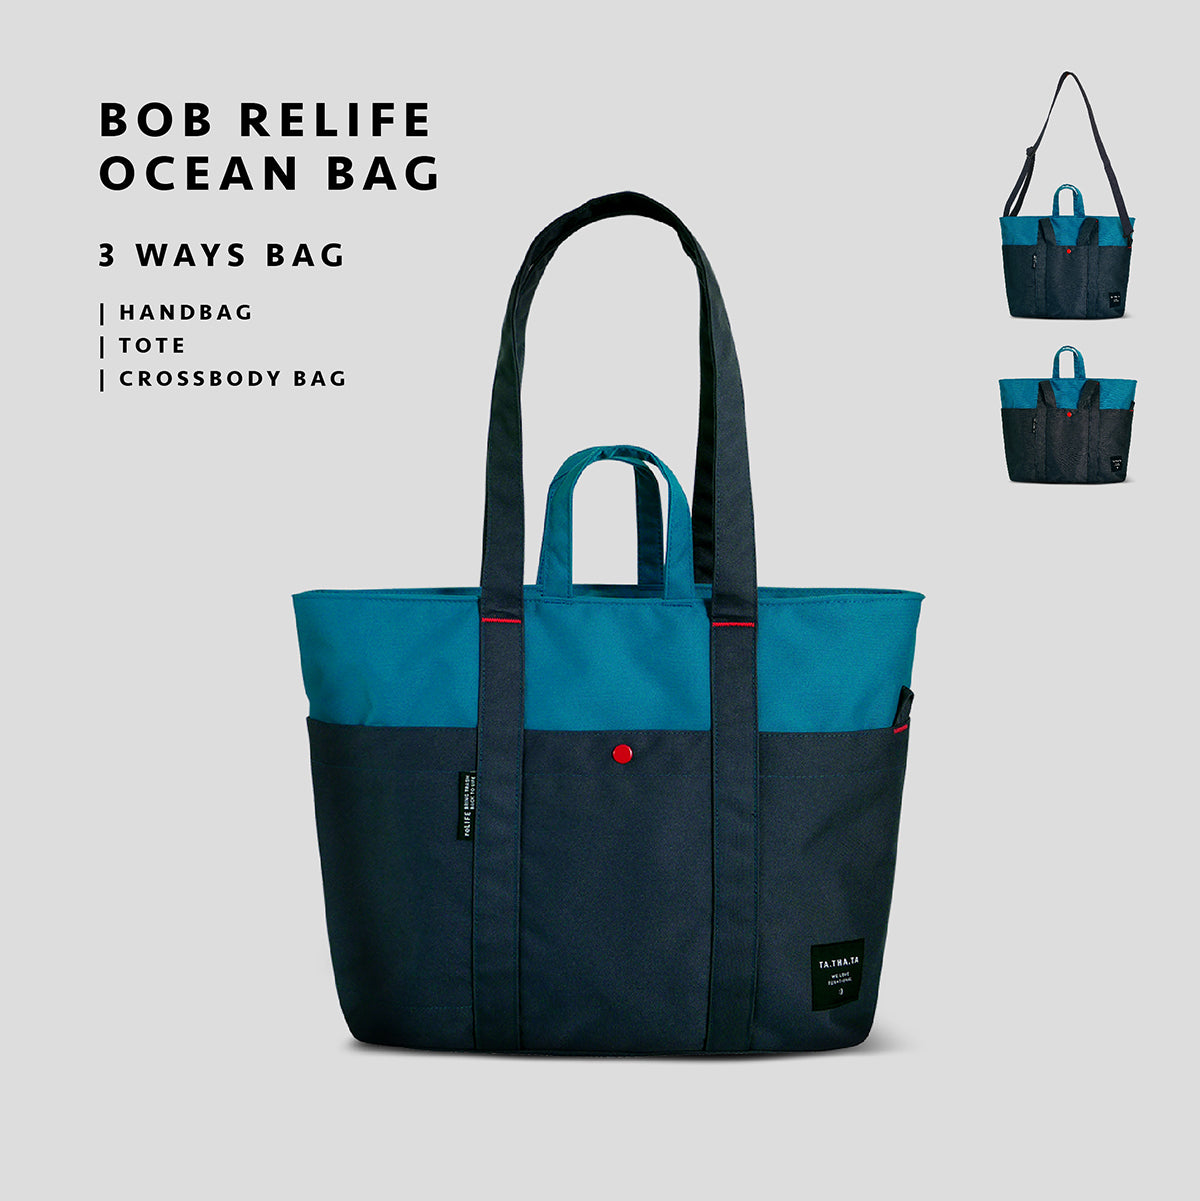 Bob relife ocean bag